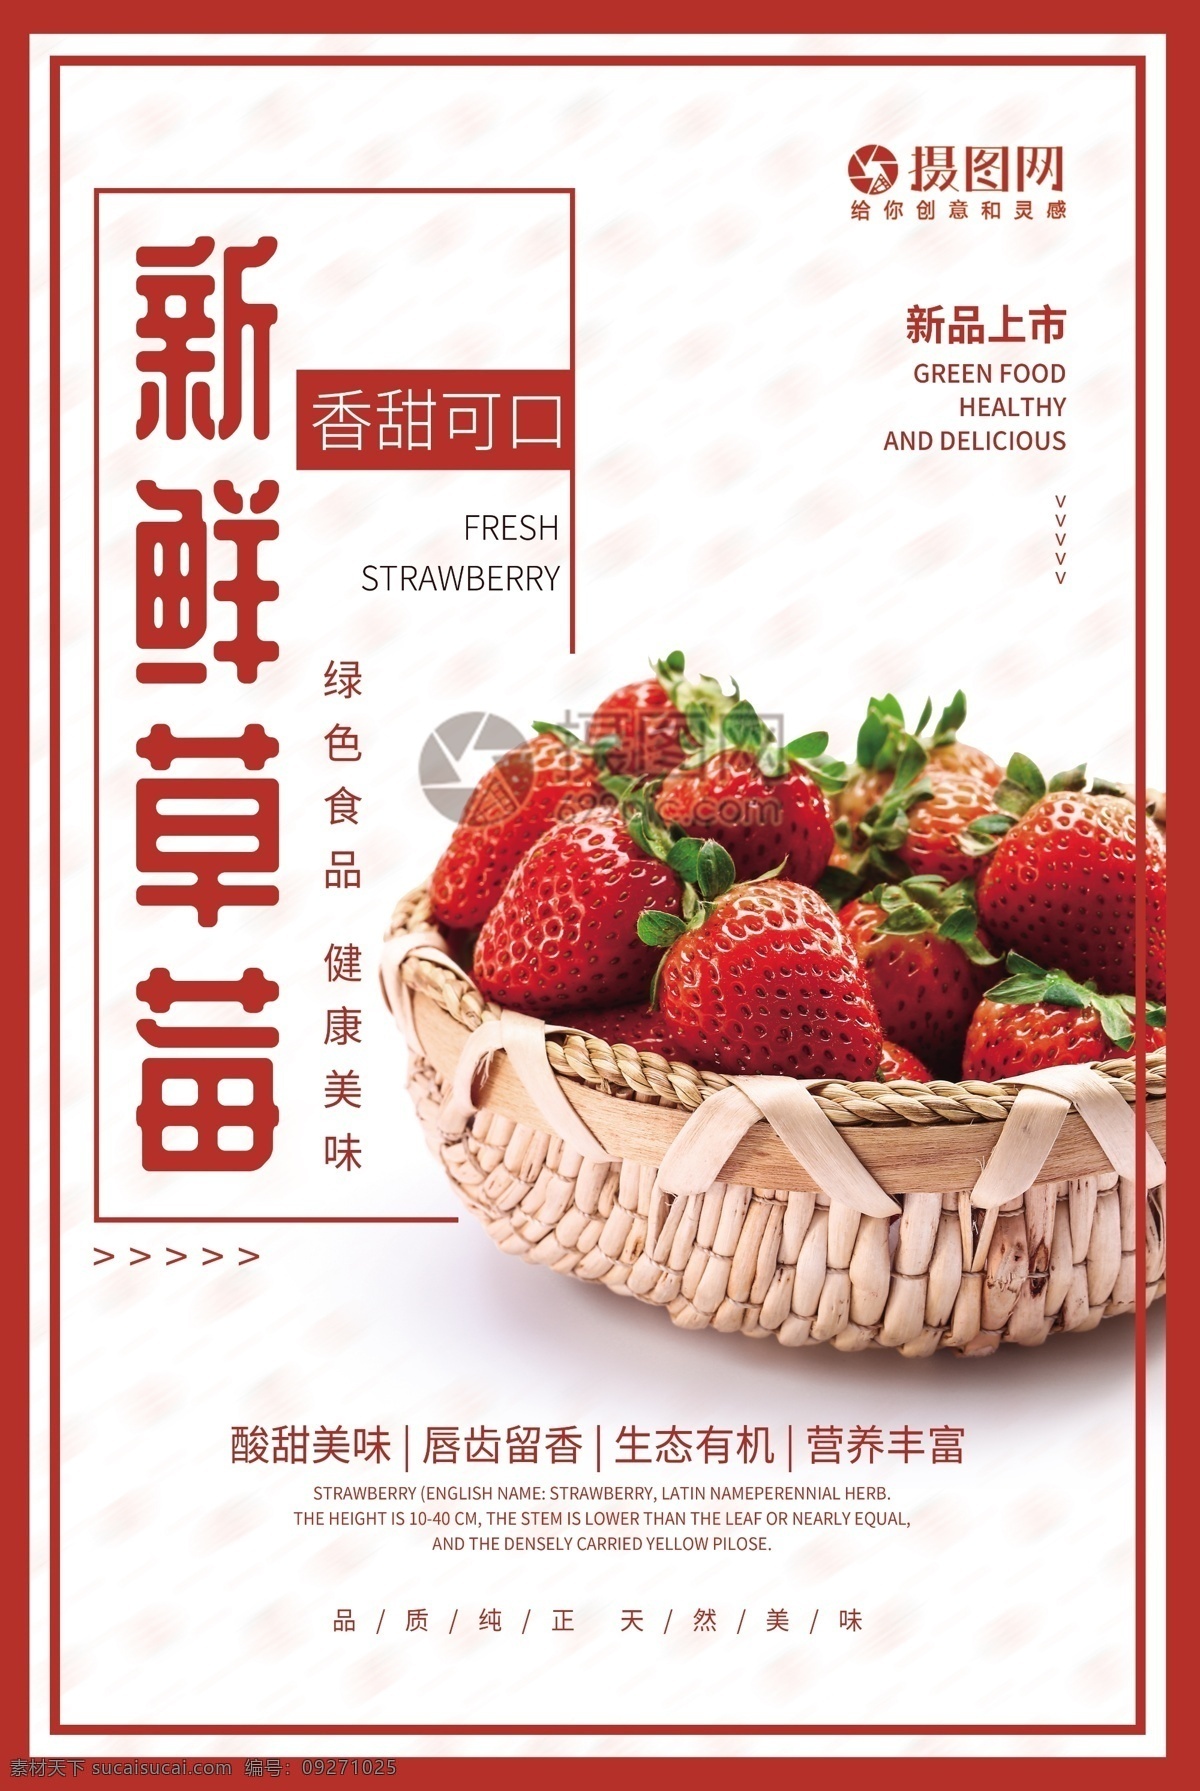 简约 新鲜 草莓 水果 海报 新鲜草莓 水果海报 草莓海报 新鲜草莓海报 美食水果 新品上市 绿色食品 香甜可口 美食餐饮 新鲜水果